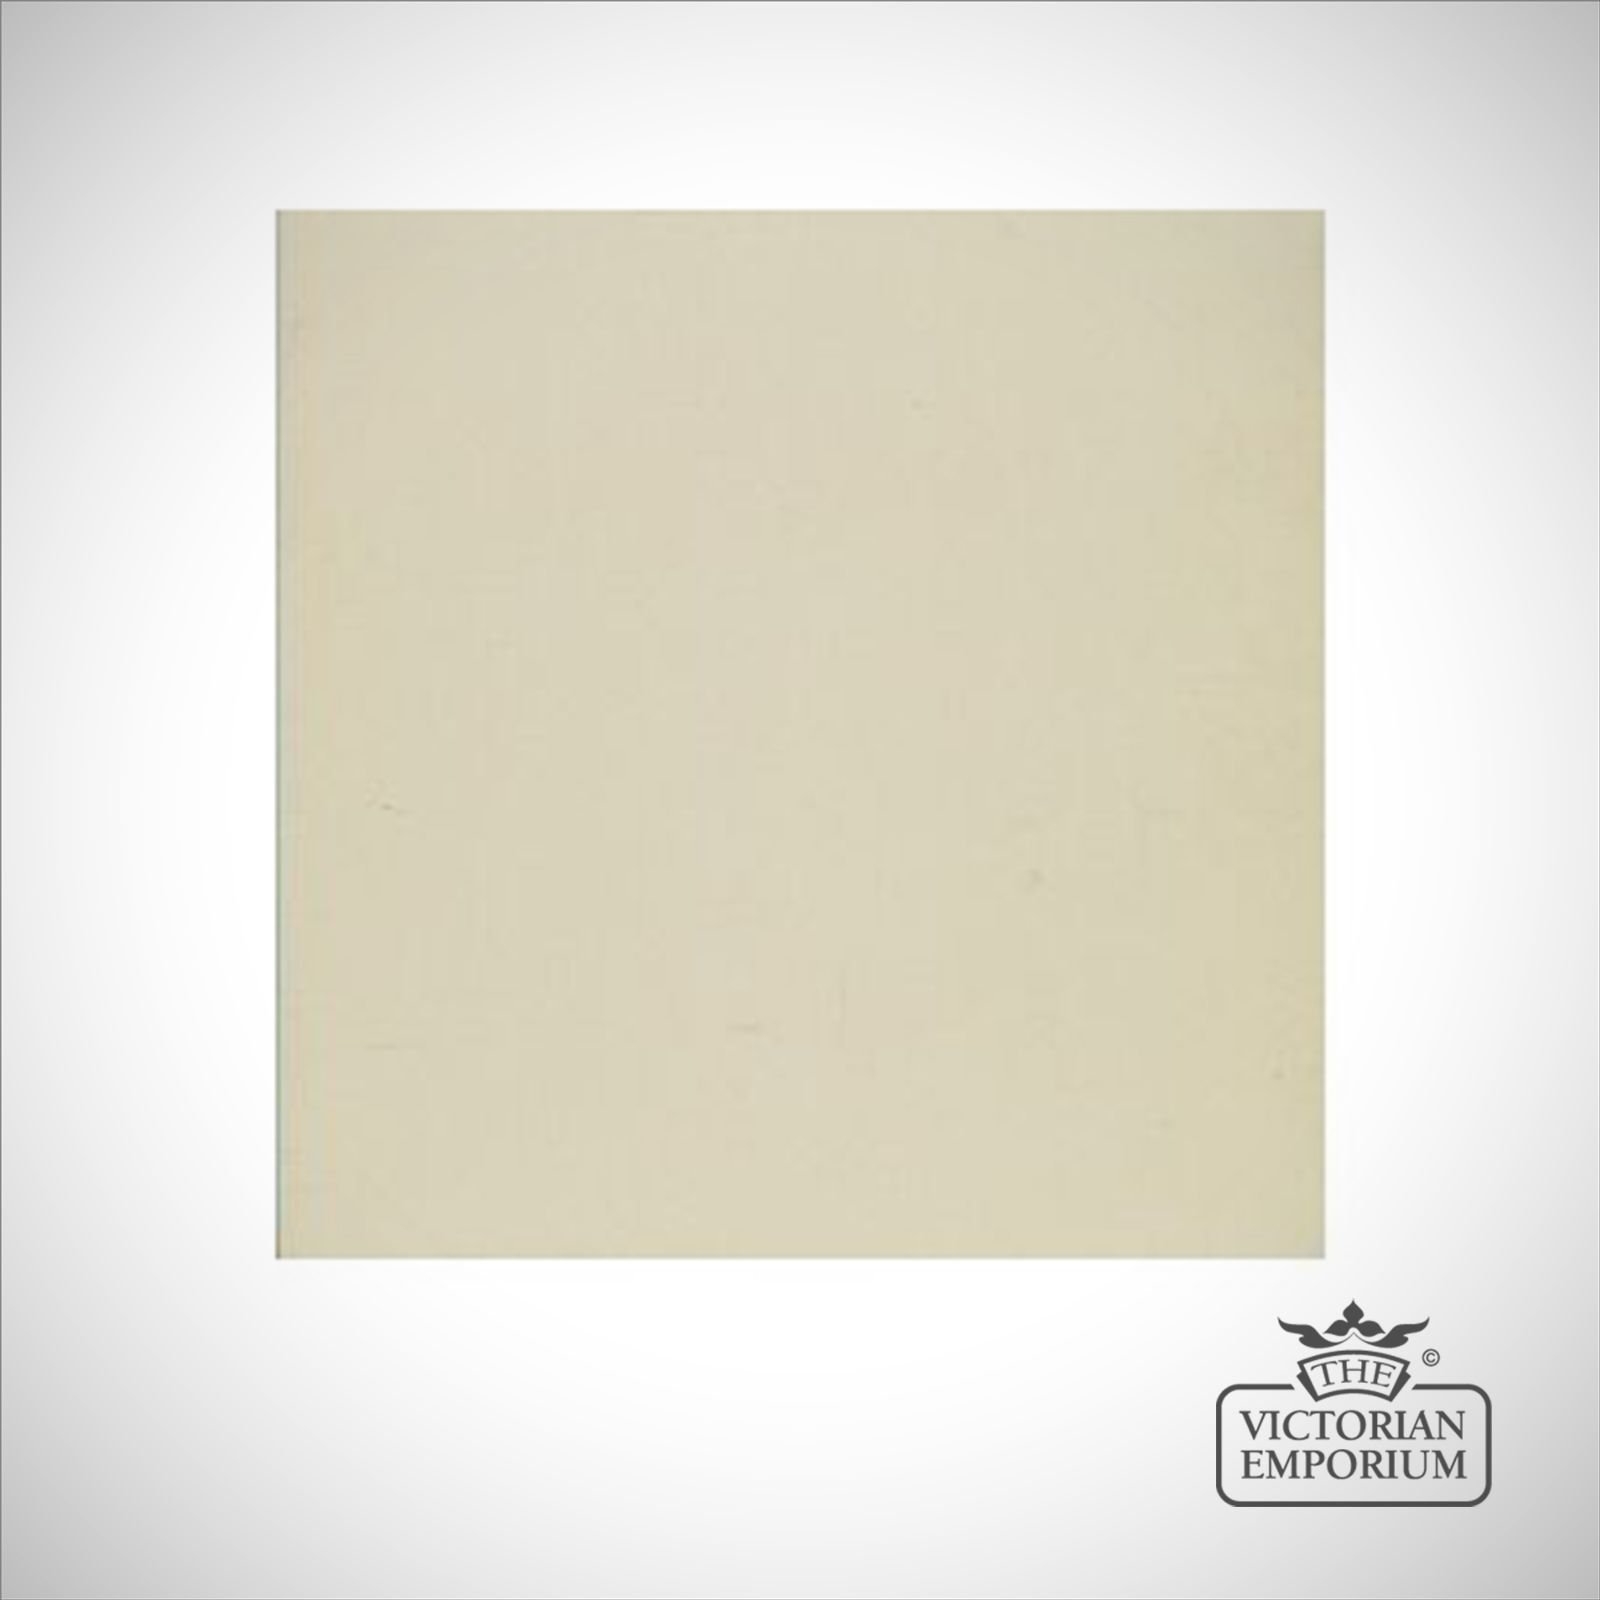 Basic White Floor Tile - interior or exterior use